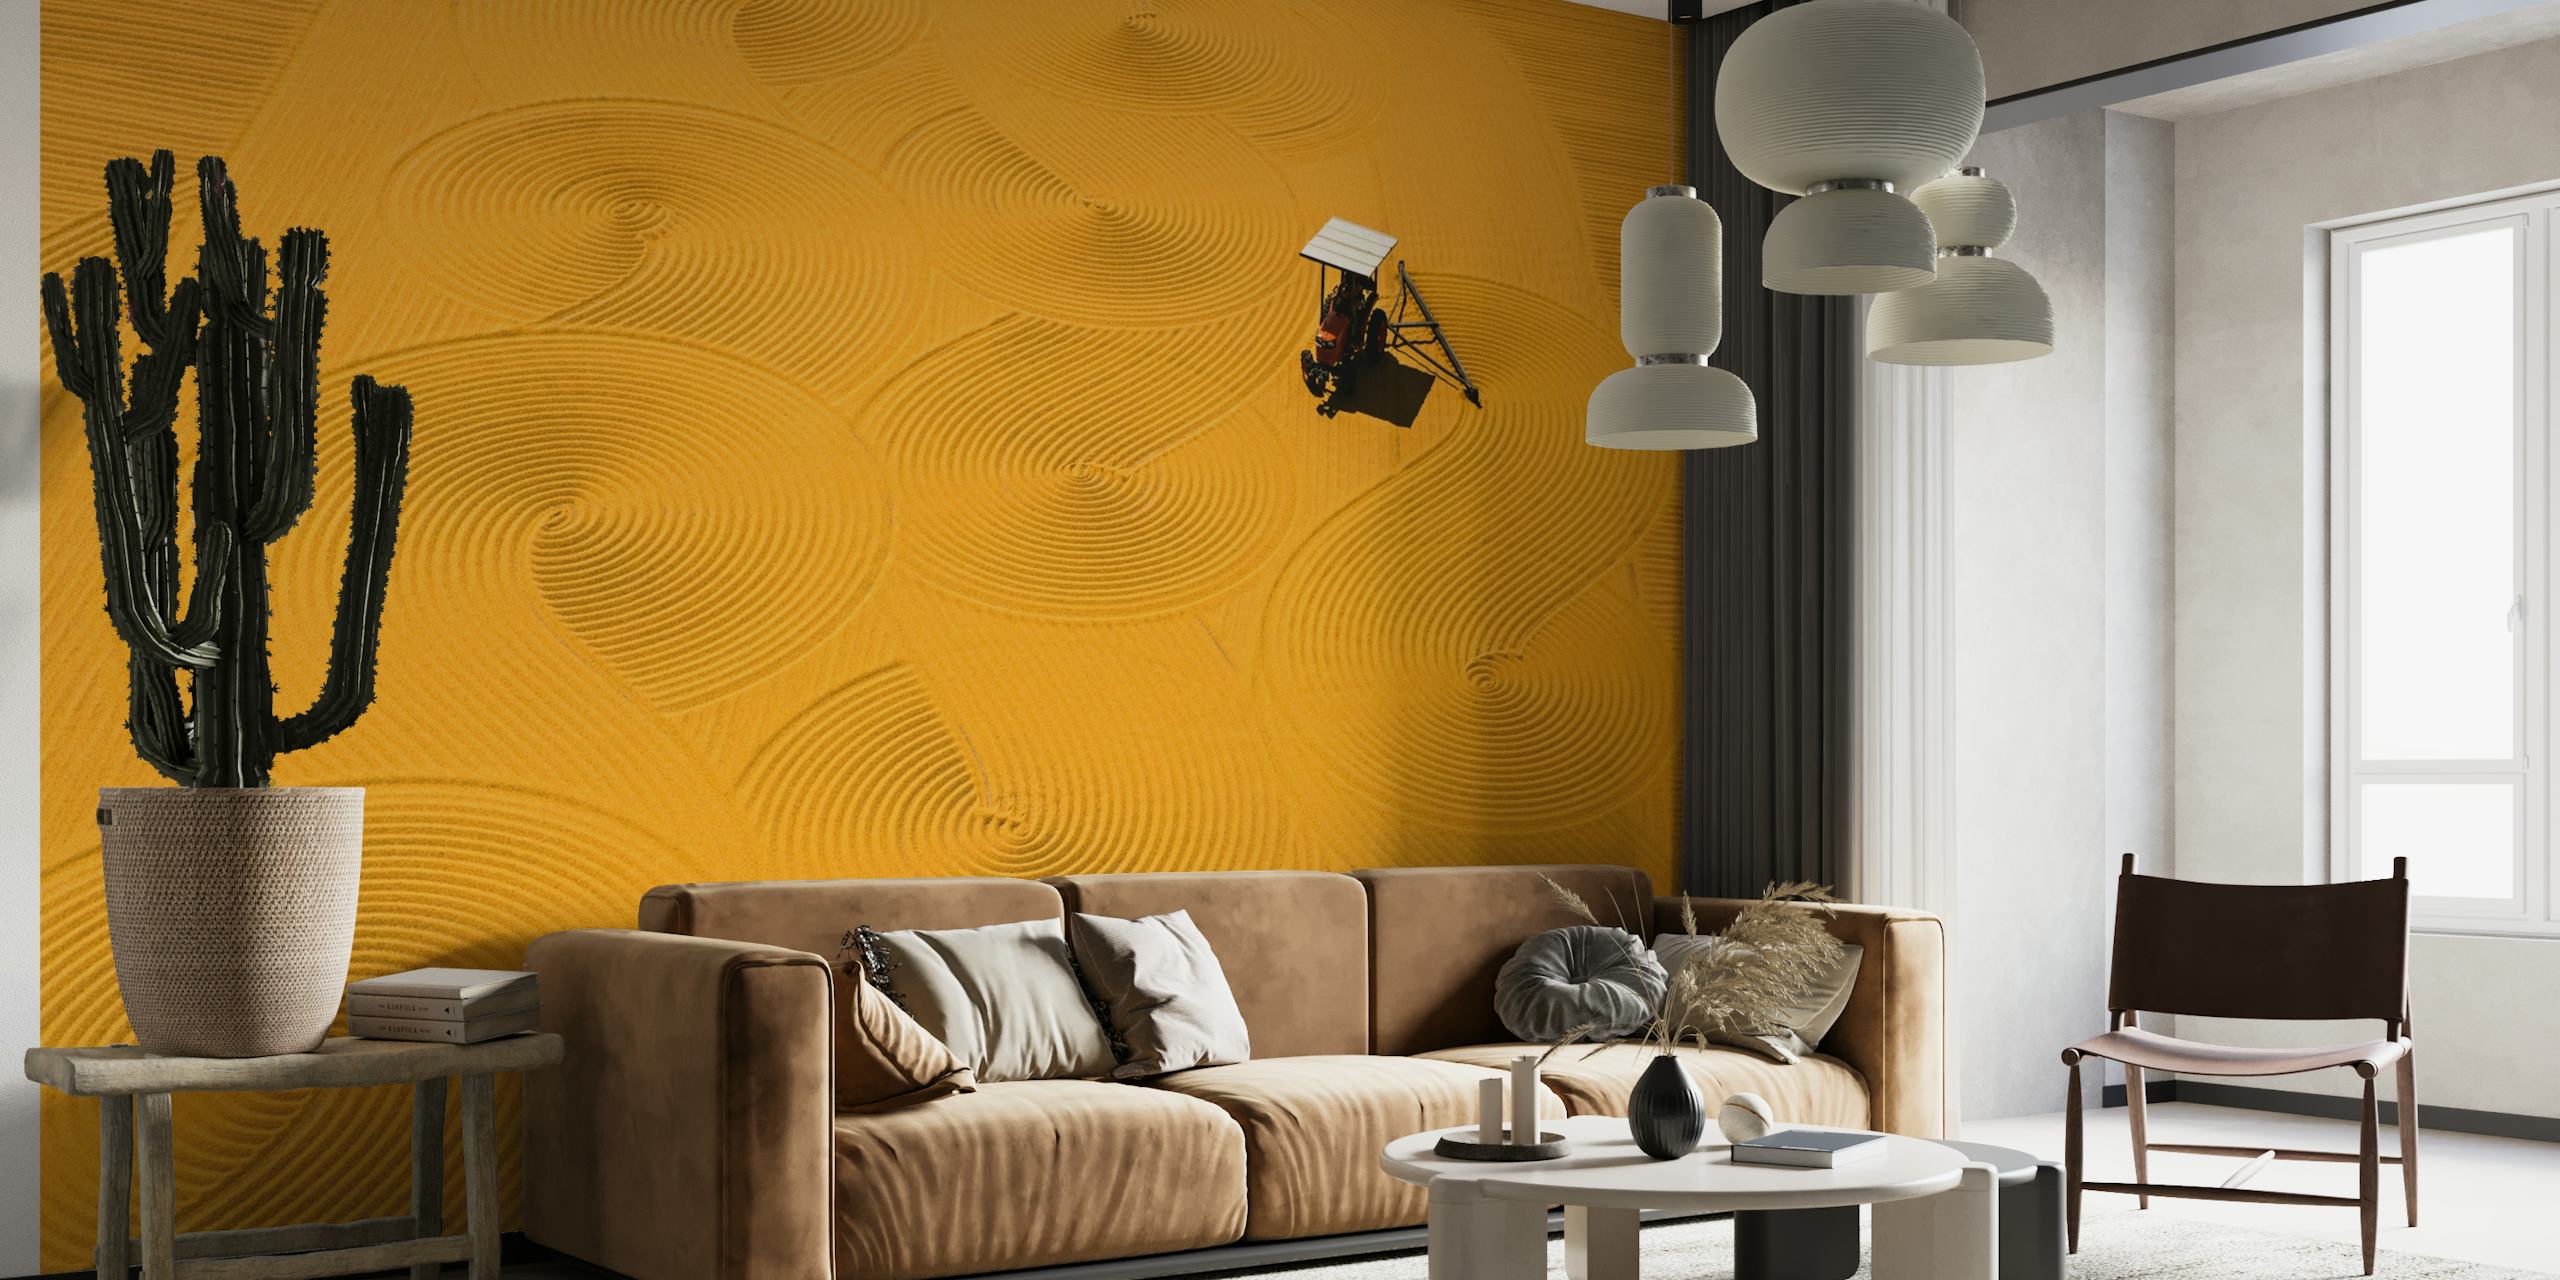 Bulgur drying wallpaper